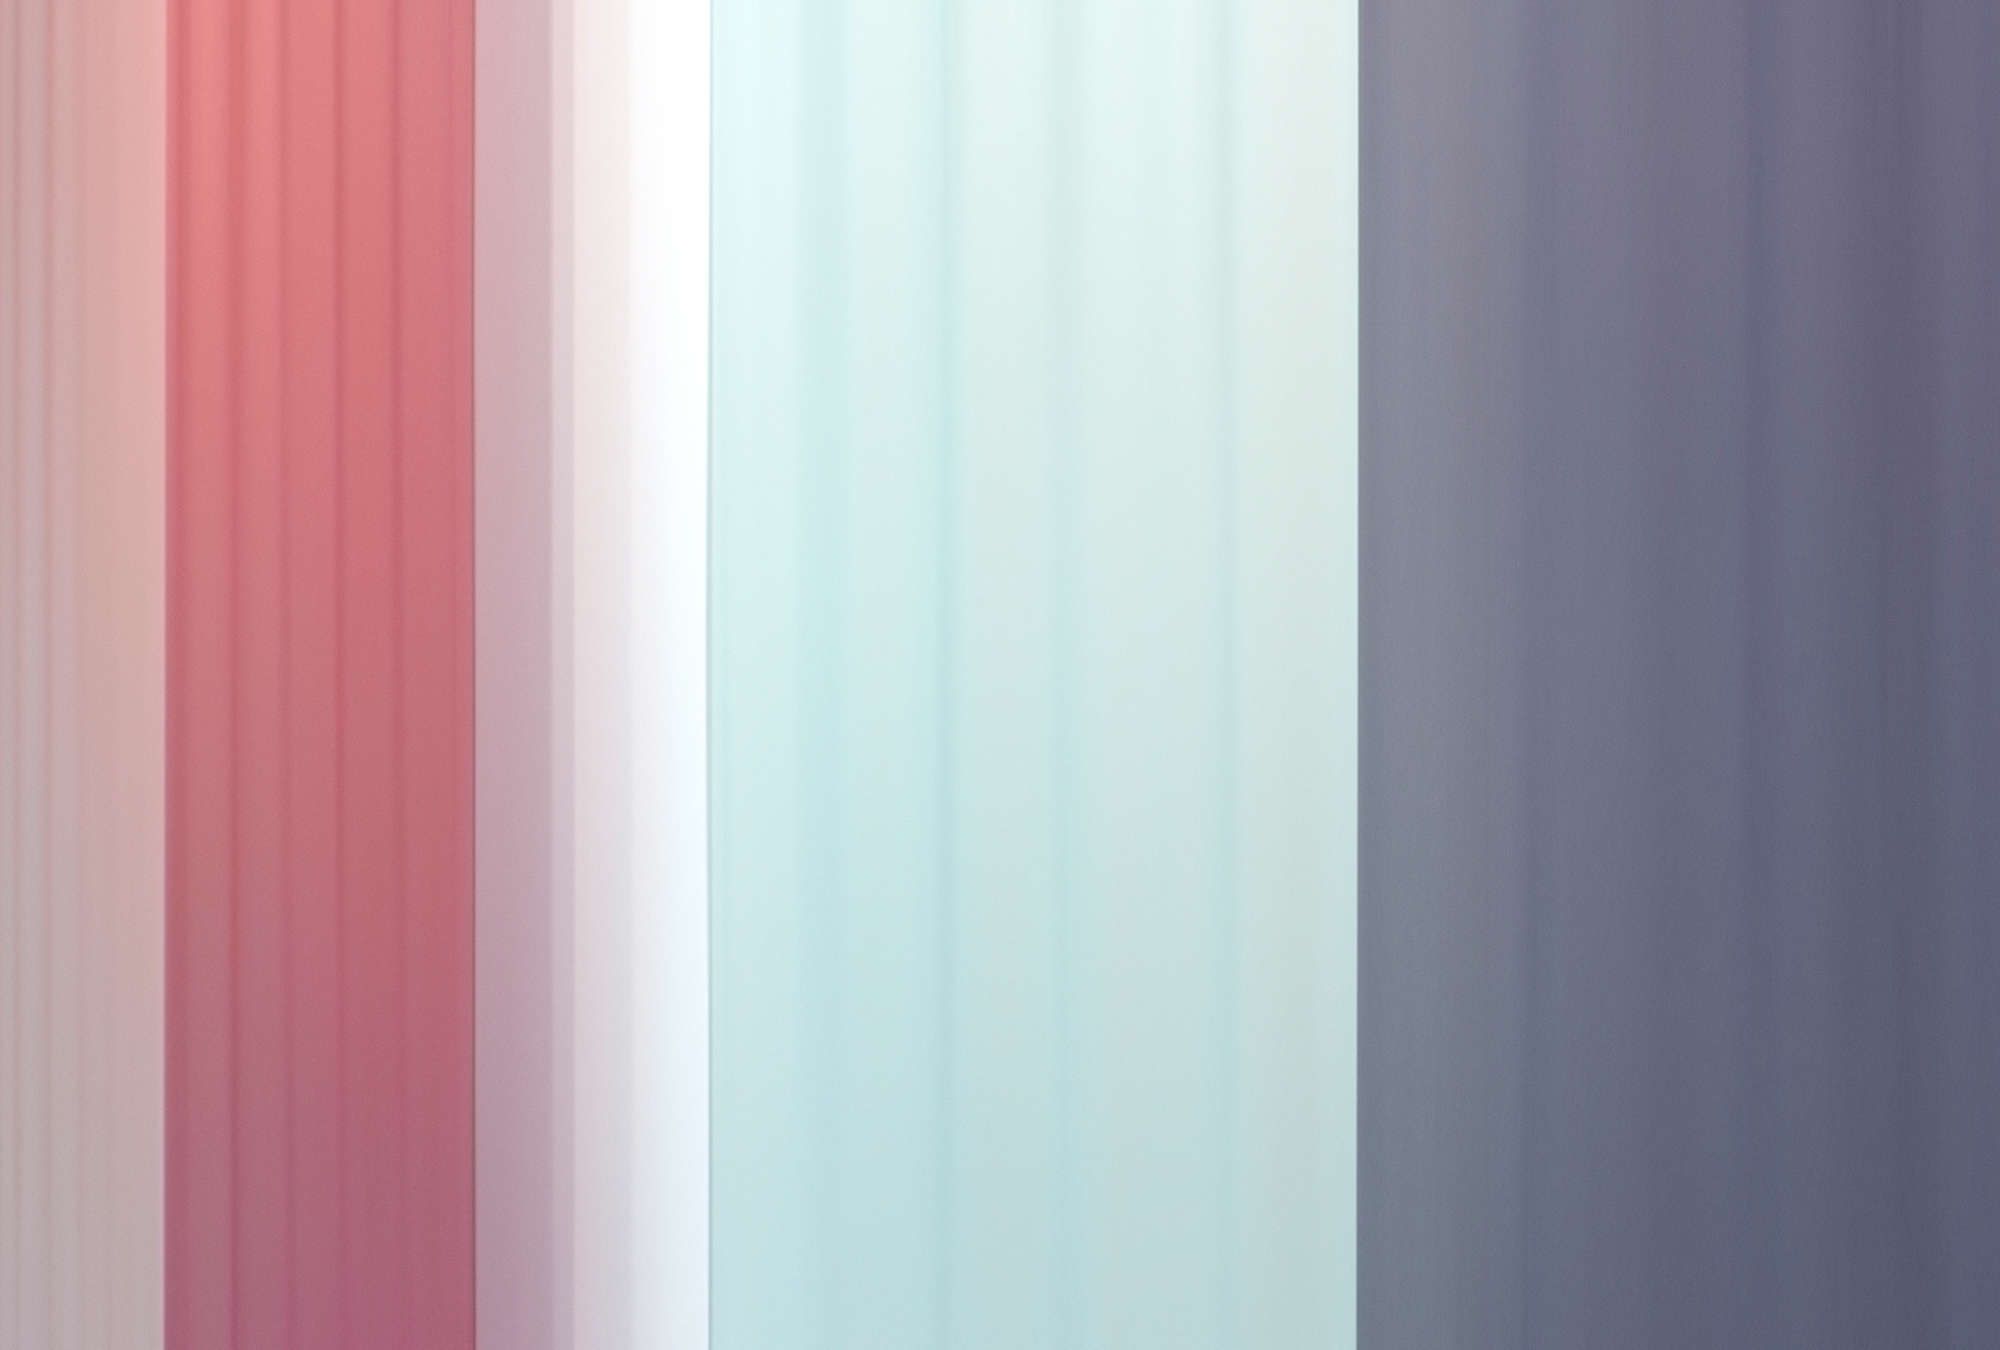             Fotomurali »co-colores 2« - Gradiente di colore a strisce - Rosa, azzurro, blu scuro | Materiali non tessuto liscio, leggermente perlato e scintillante
        